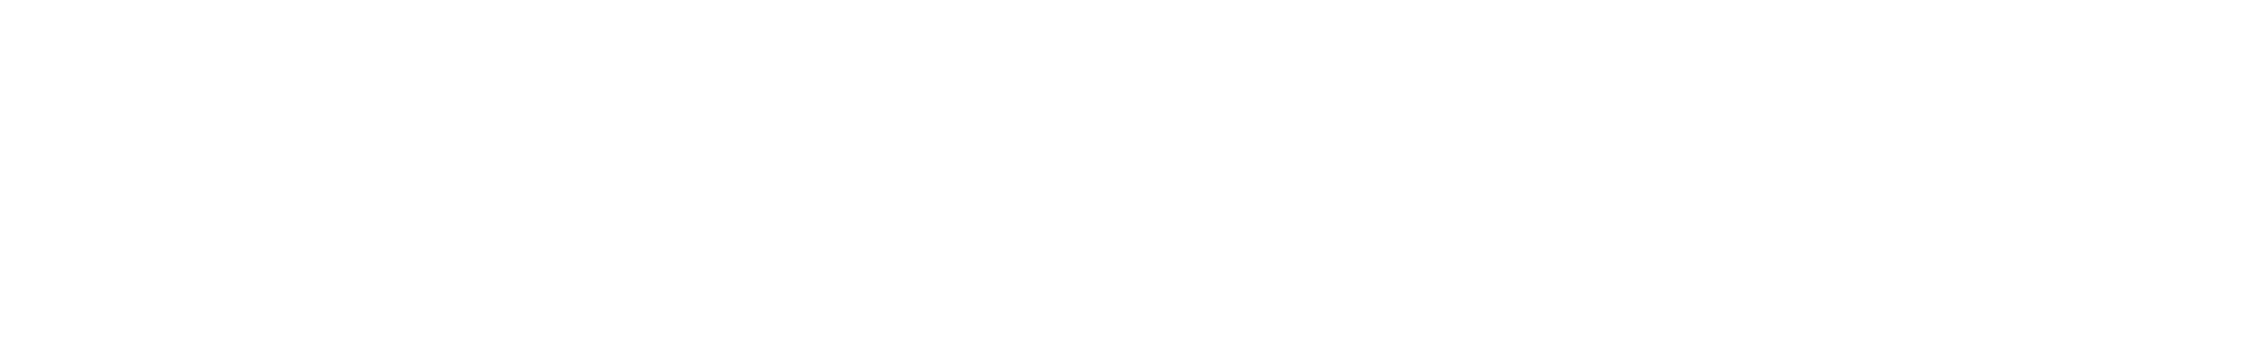 Get hooked logo diap